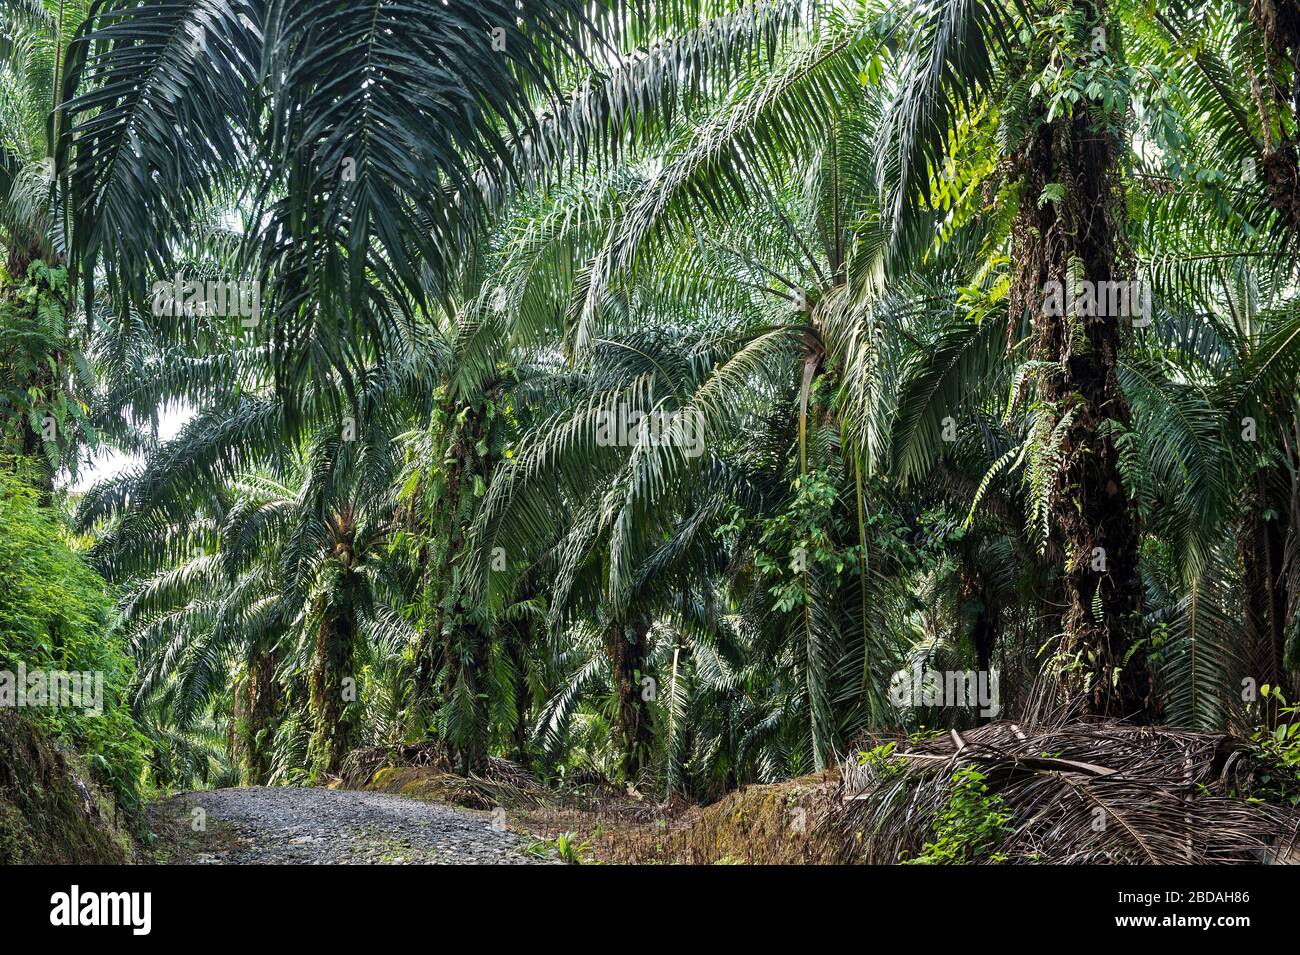 Plantation commerciale de palmiers à huile (Elaeis guineensis), Sabah, Bornéo, Malaisie Banque D'Images